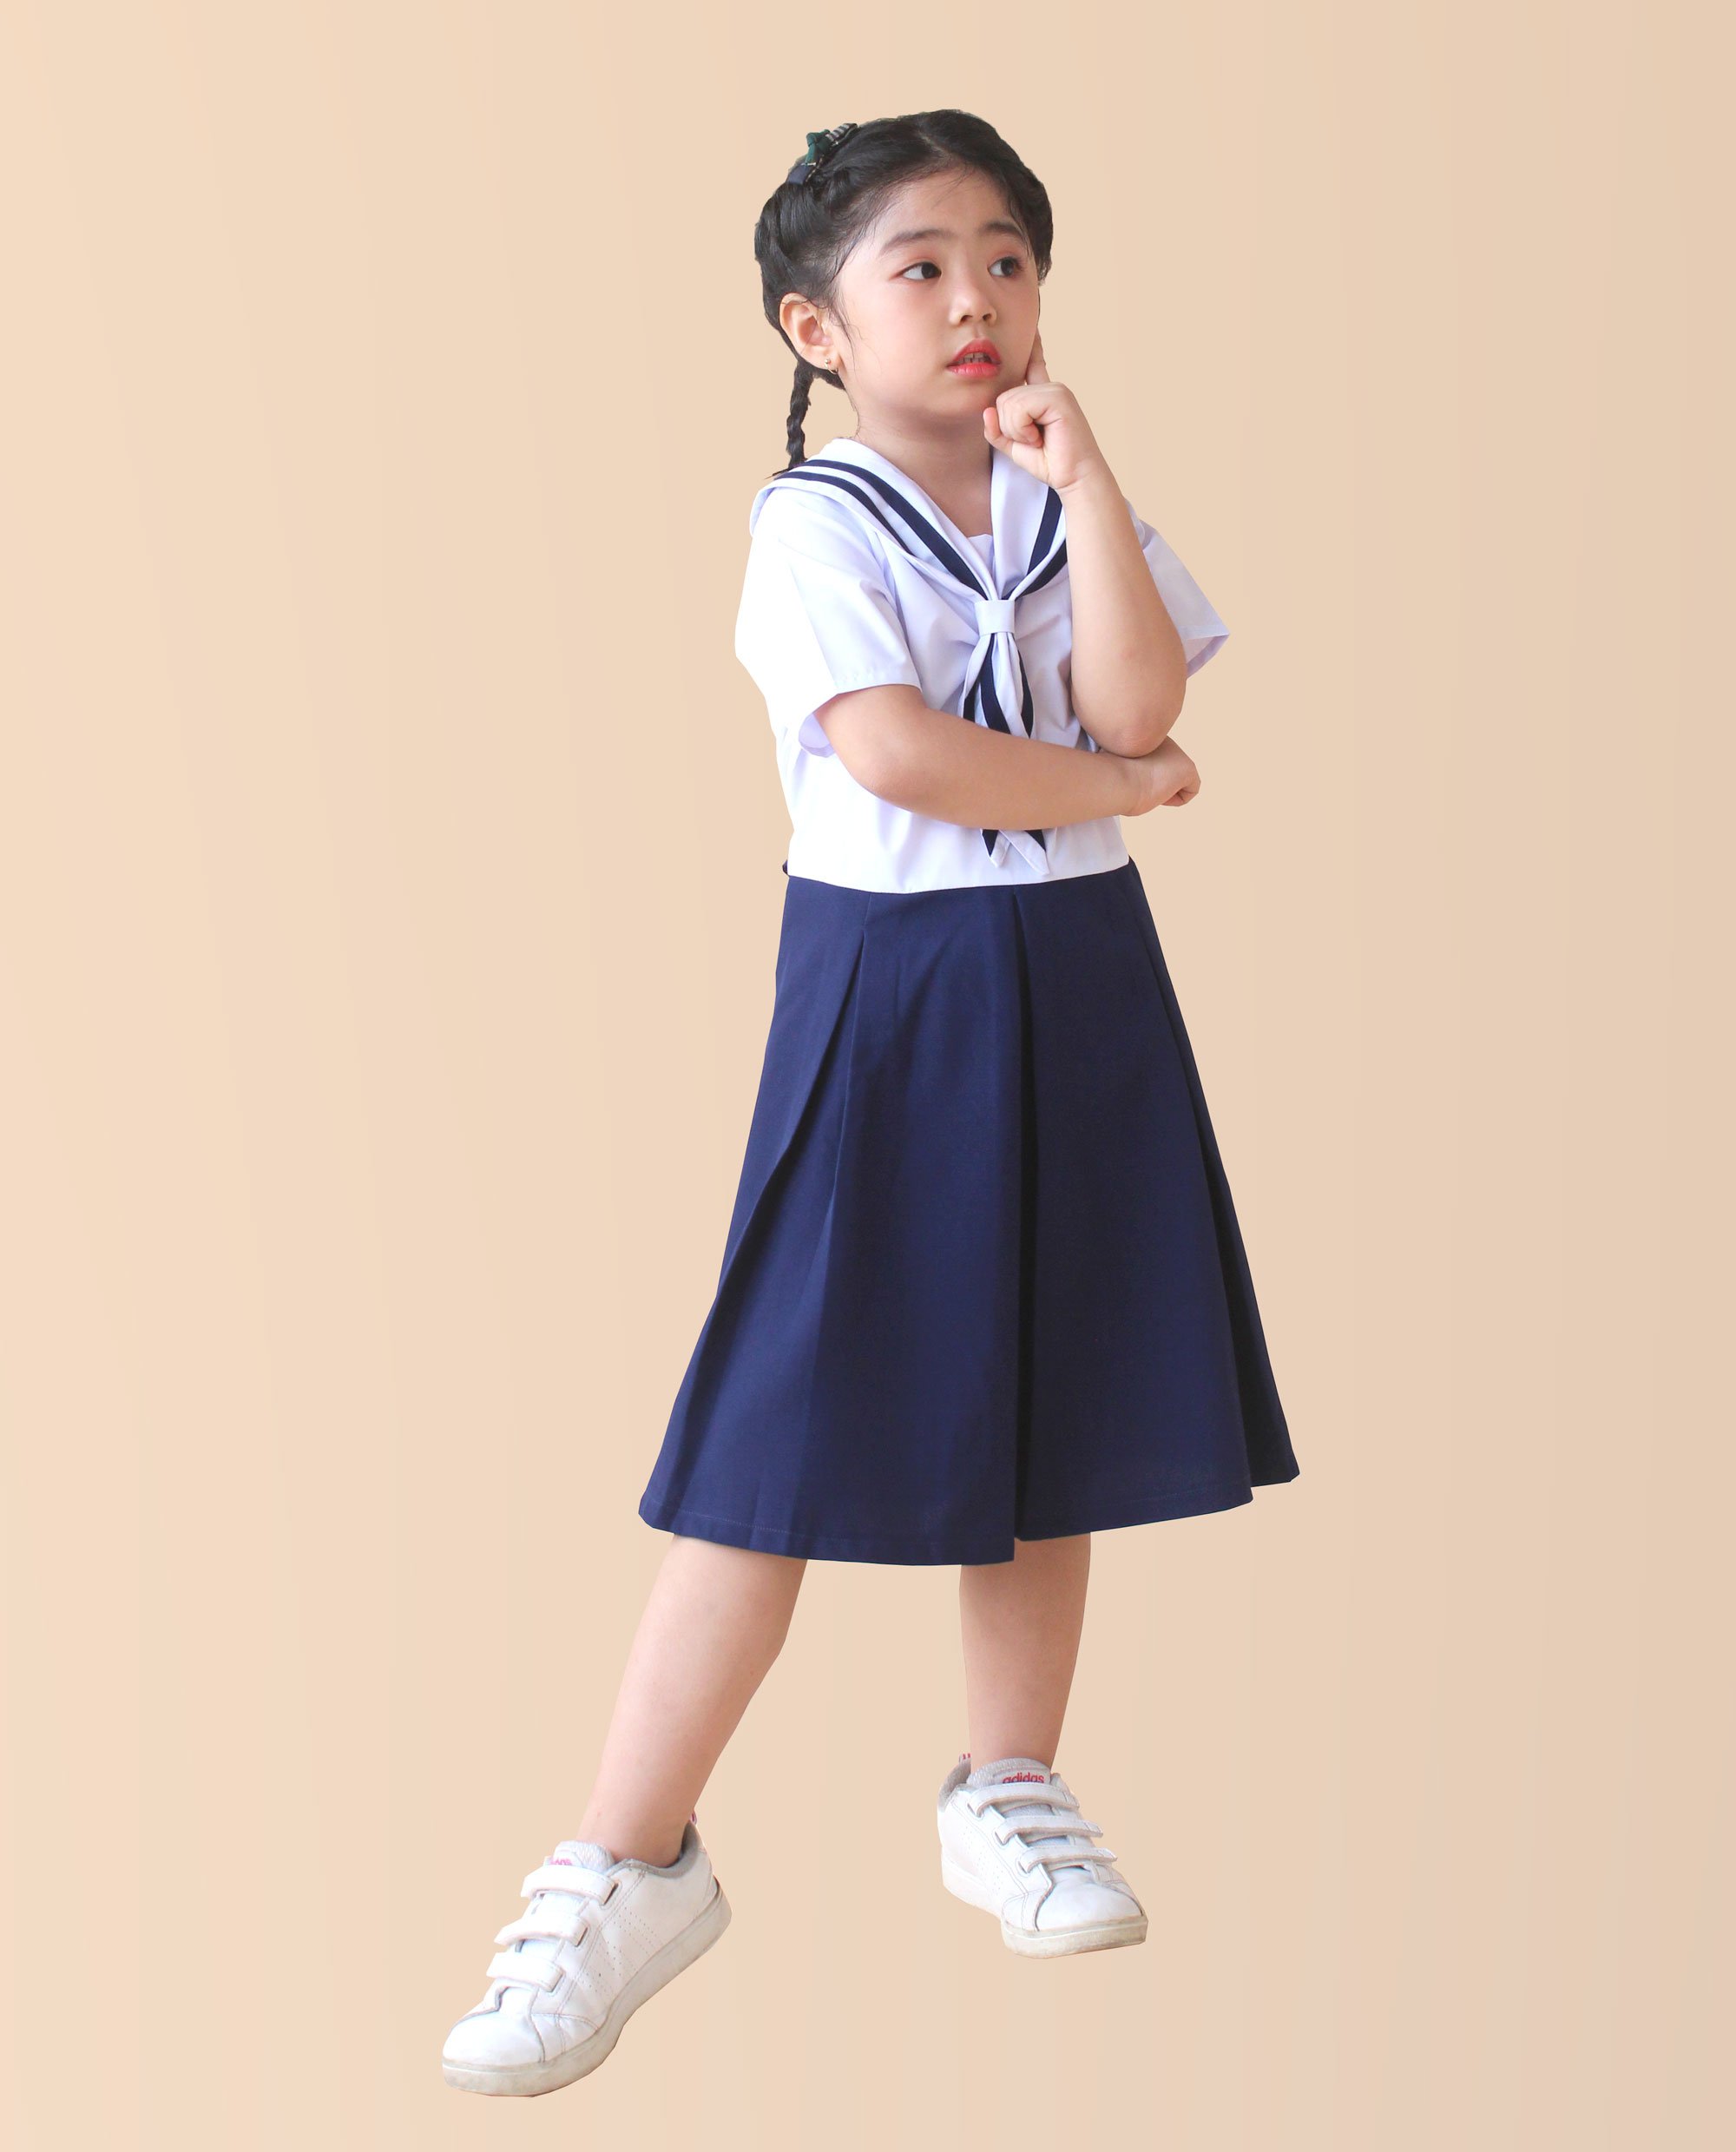 Đầm đi học cho bé gái lớp 1 nhún bèo Jadiny, đầm đồng phục học sinh cấp 1, tiểu học, kiểu dáng đẹp, thấm hút mồ hôi, vải chất lượng, không ra màu